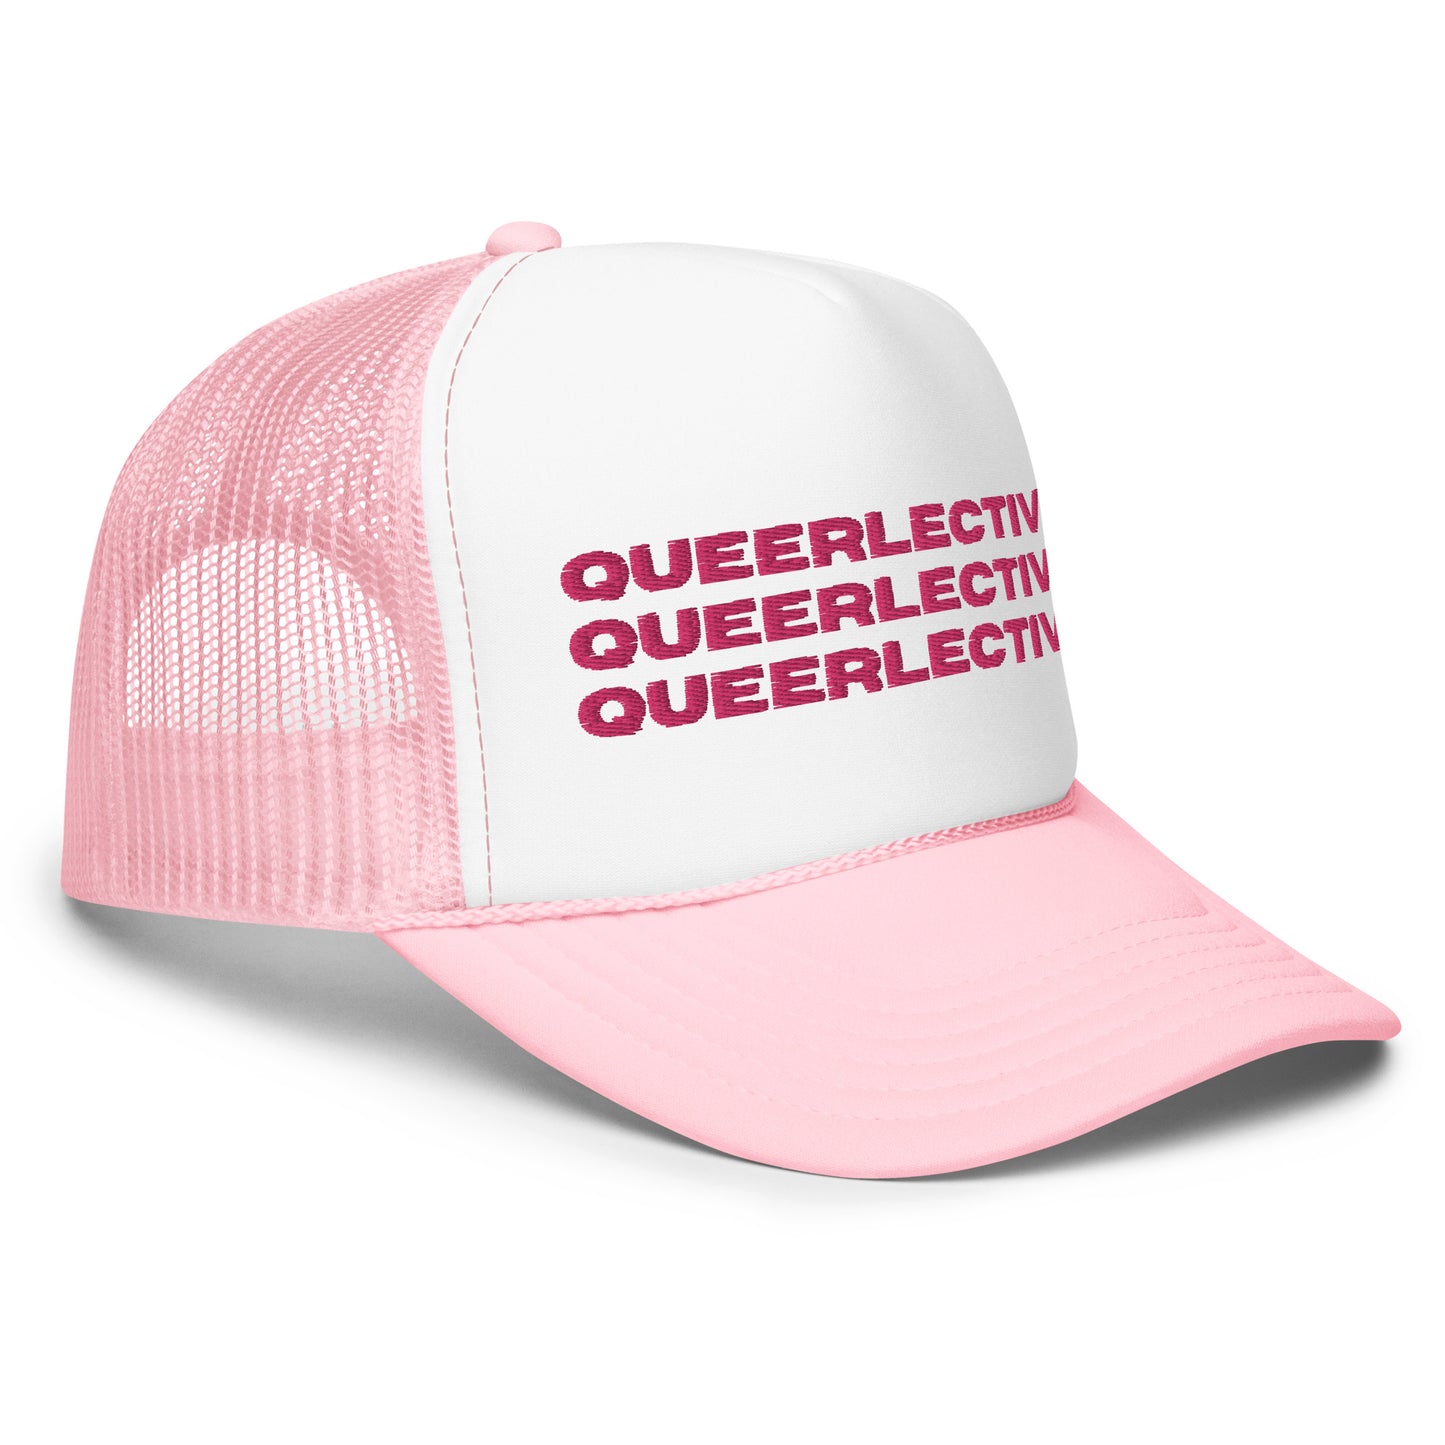 Queerlective Foam Trucker Hat